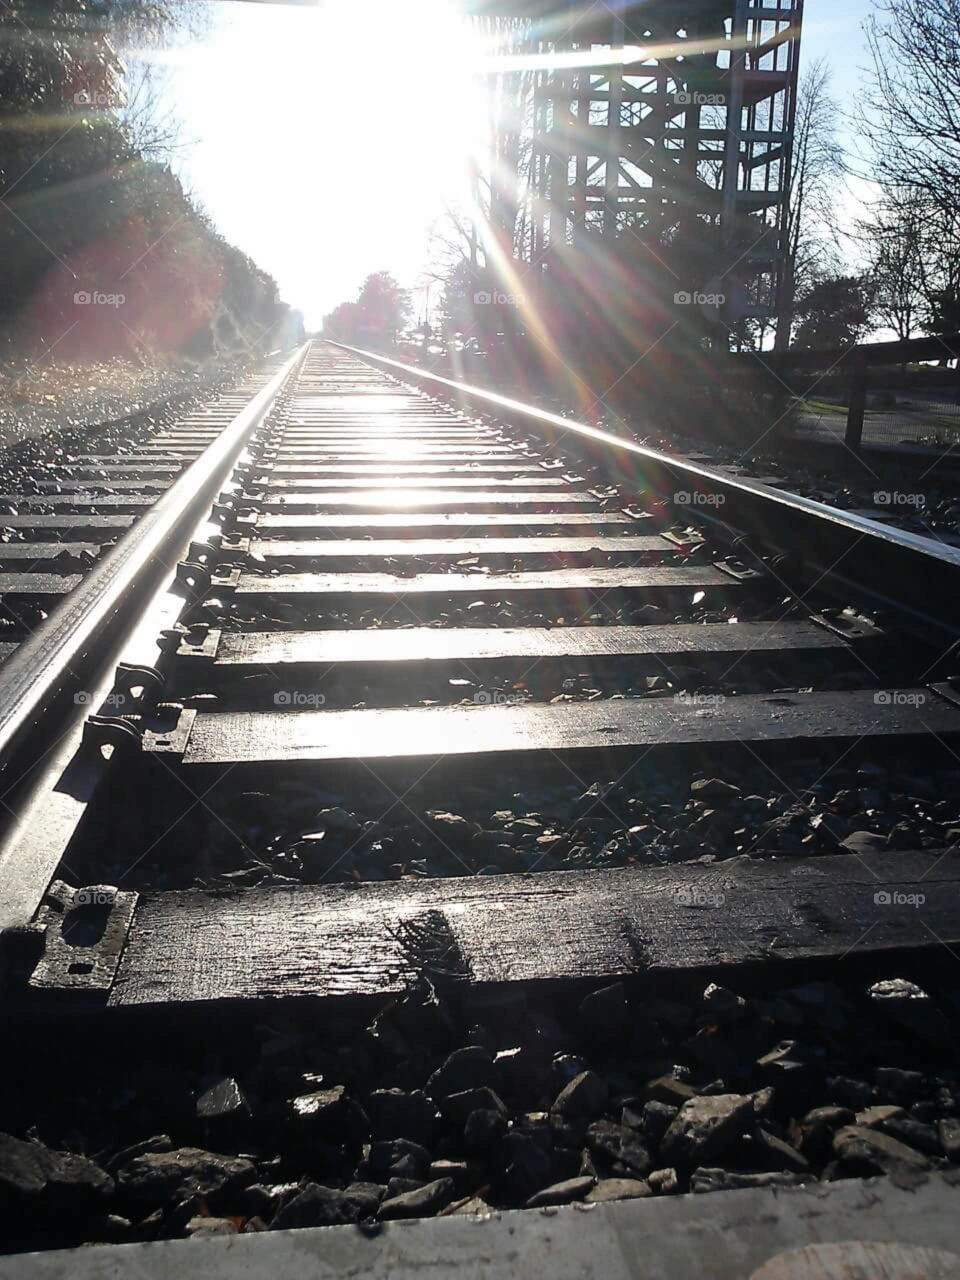 among the tracks we wander